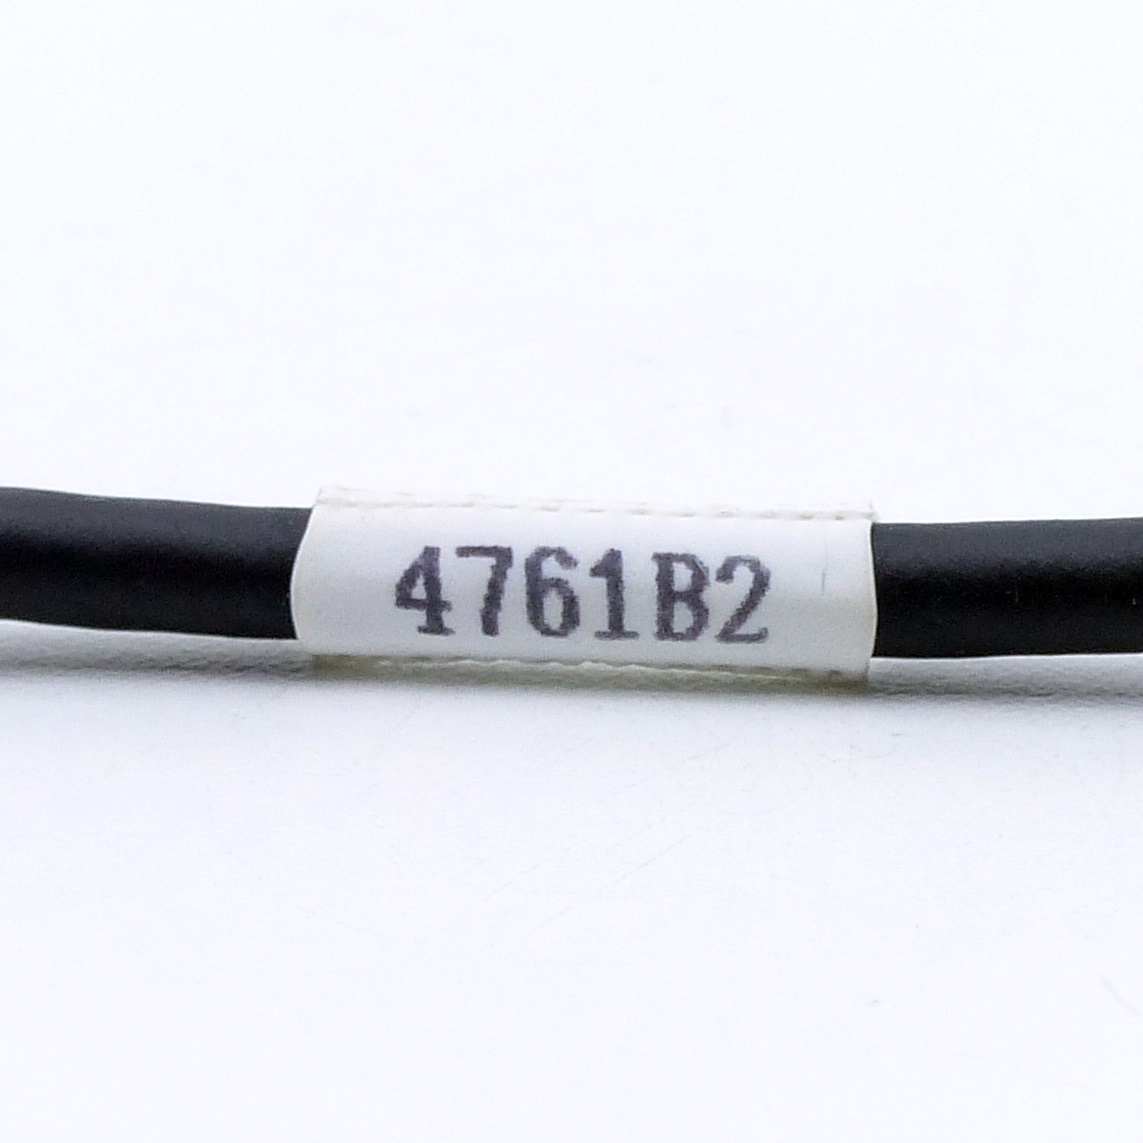 Kabel 4761B2 